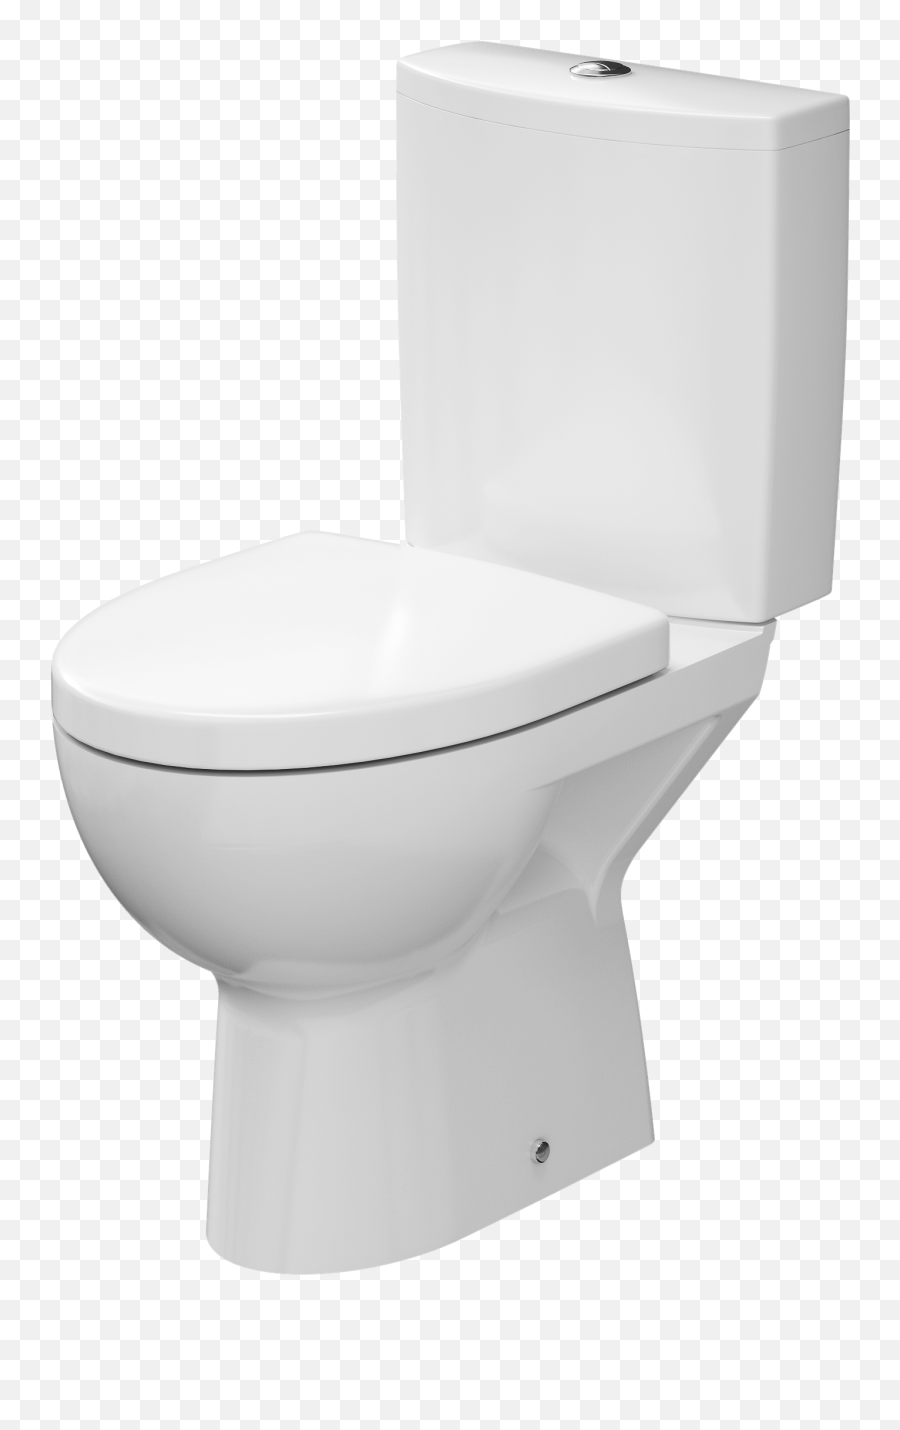 Toilet Bathroom - Deska Wc Cersanit Antybakteryjna Wolnoopadajca Emoji,Toilet Transparent